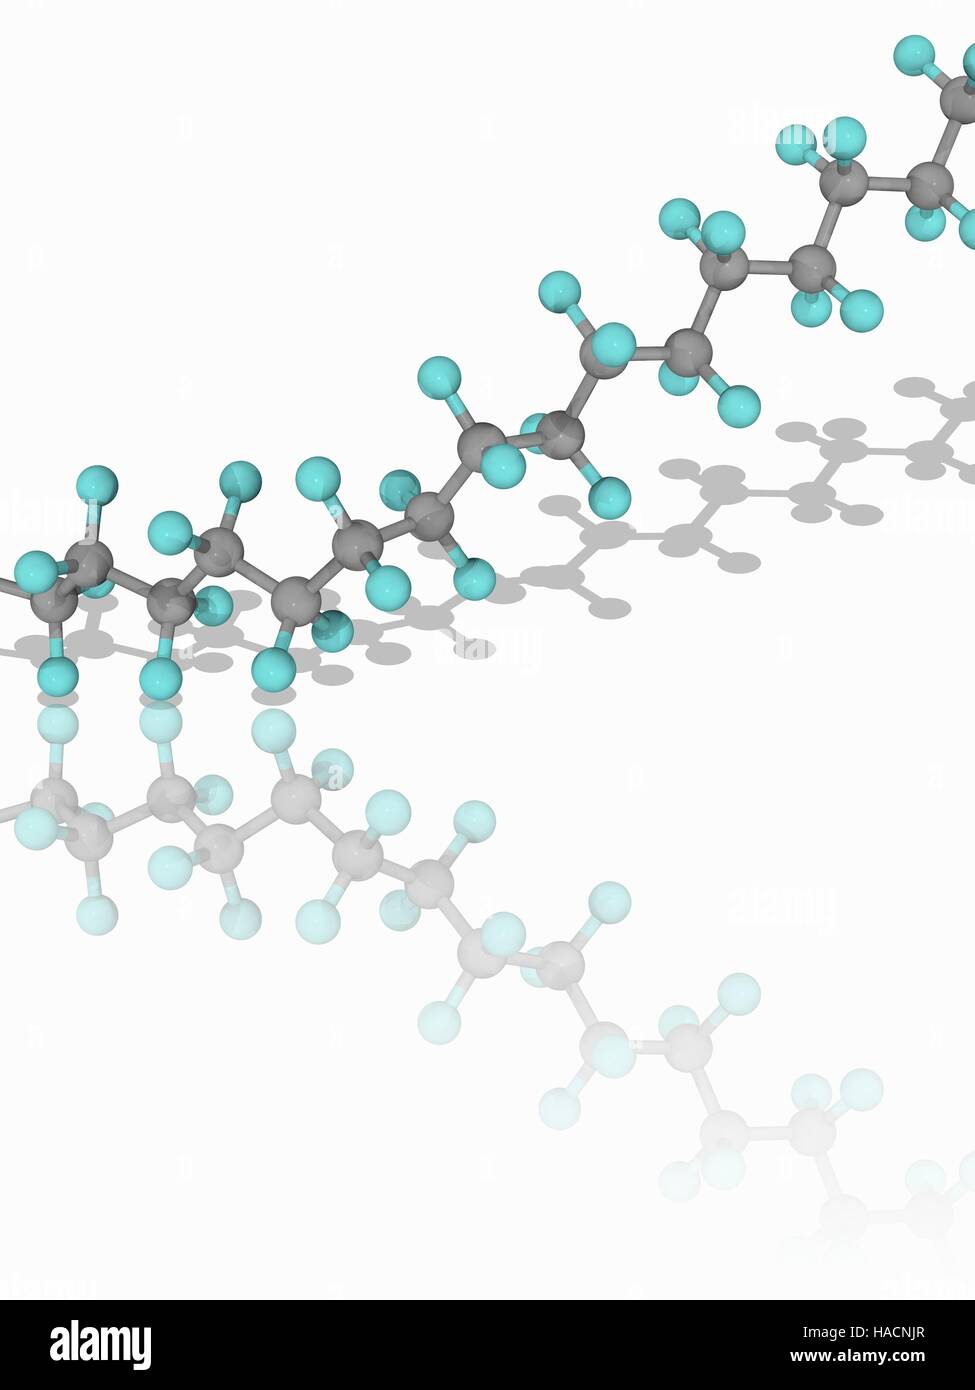 Teflon. Molekulares Modell des Teil einer Kette von synthetische hydrophobe Fluorpolymer Polytetrafluorethylen (PTFE), ein Polymer, bestehend aus Ketten von Monomeren Tetrafluorethylen (C2. F4). PTFE, auch bekannt unter einer von seinen Handelsnamen Teflon, dient als eine Antihaft-Beschichtung für Pfannen. Atome als Kugeln dargestellt werden und sind farblich gekennzeichnet: Kohlenstoff (grau) und Fluor (Cyan). Abbildung. Stockfoto